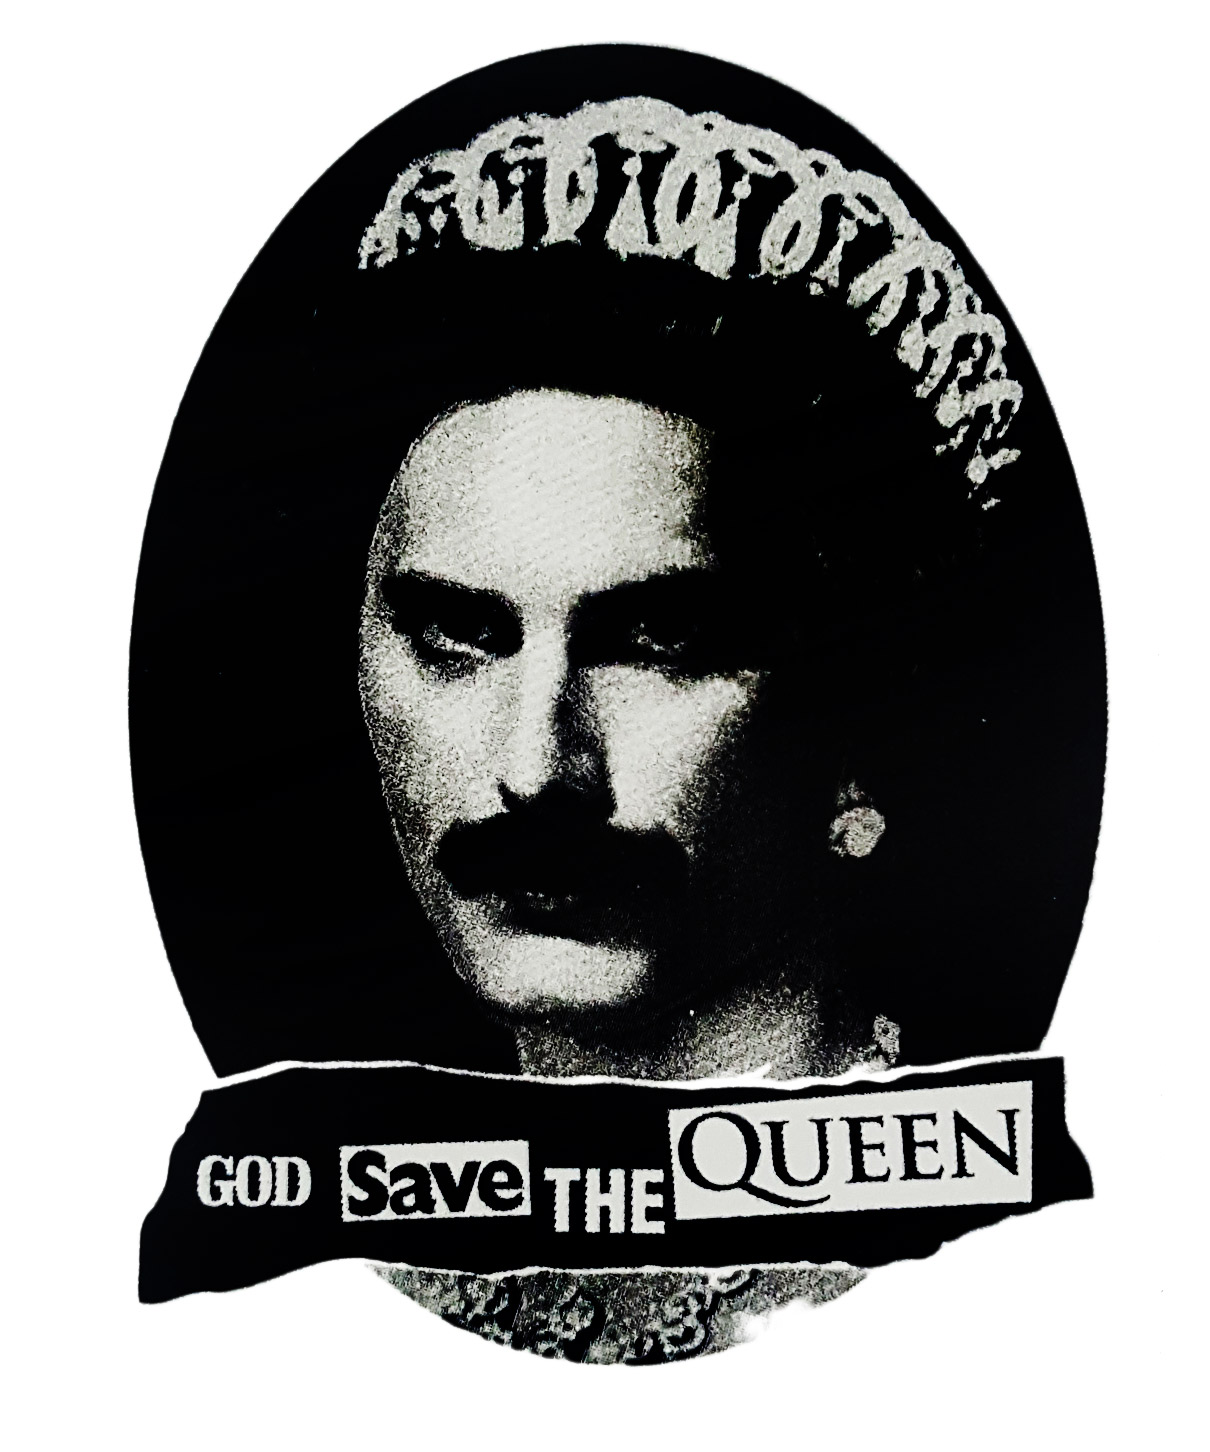 Наклейка-стикер Queen - фото 1 - rockbunker.ru